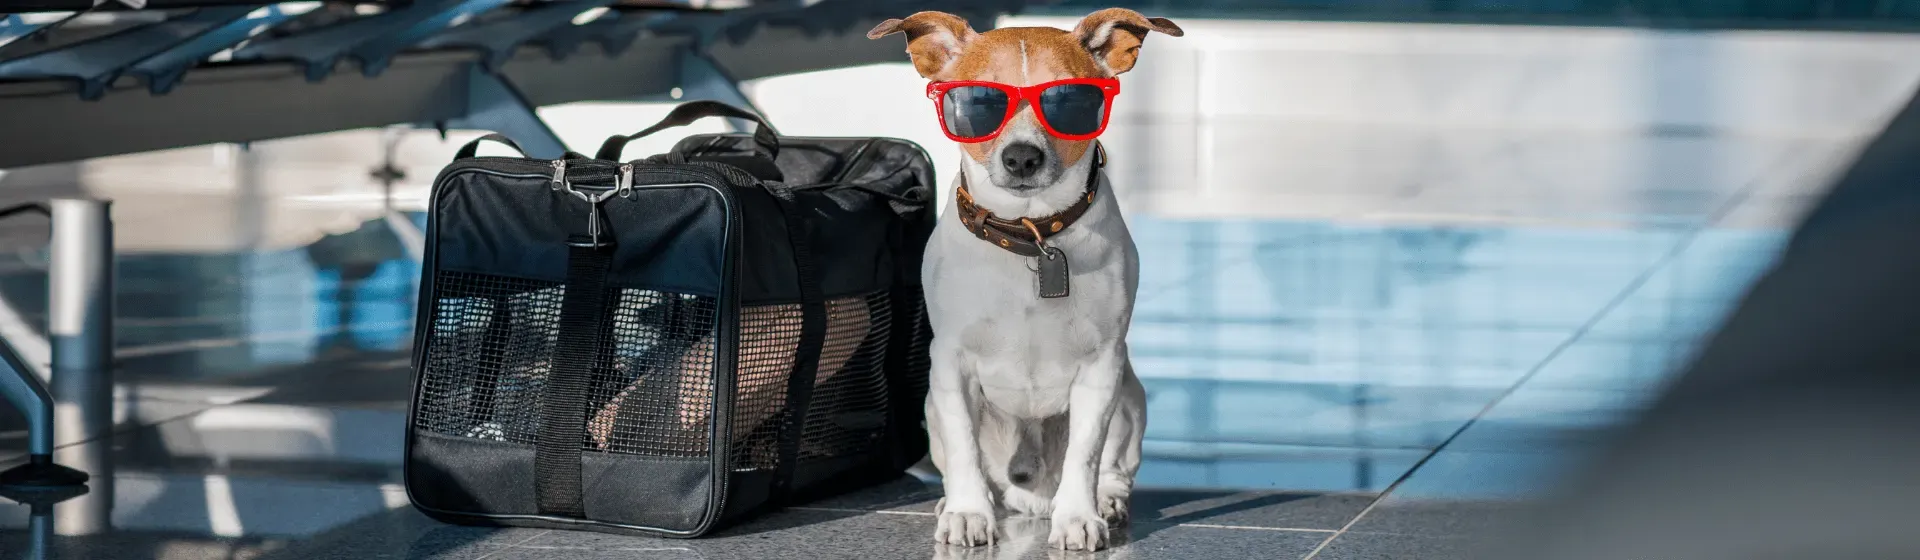 O que é preciso para viajar com um cachorro?